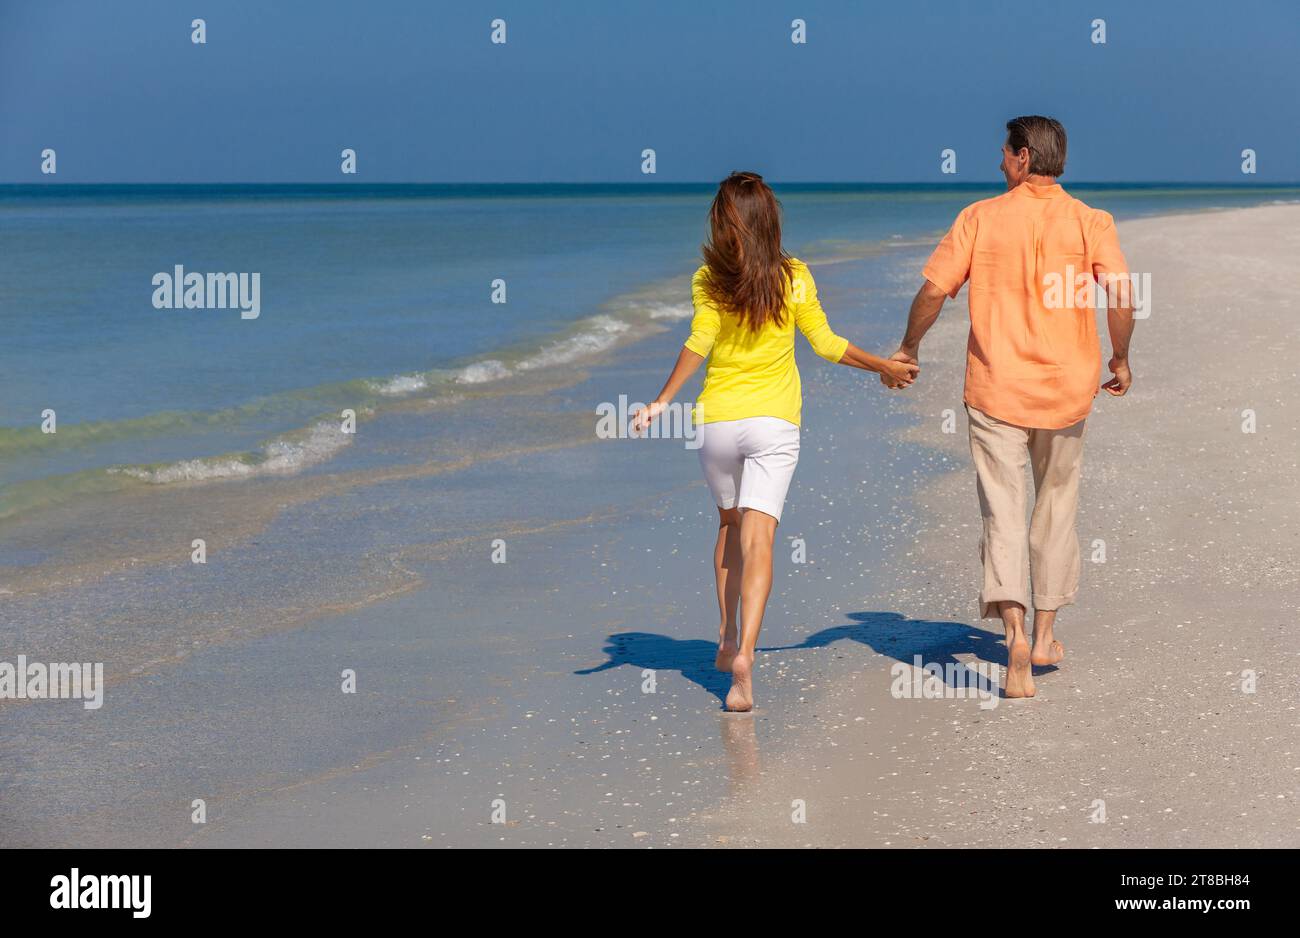 Vue arrière d'un couple heureux homme et femme courant, tenant les mains sur une plage déserte avec un ciel bleu clair lumineux Banque D'Images